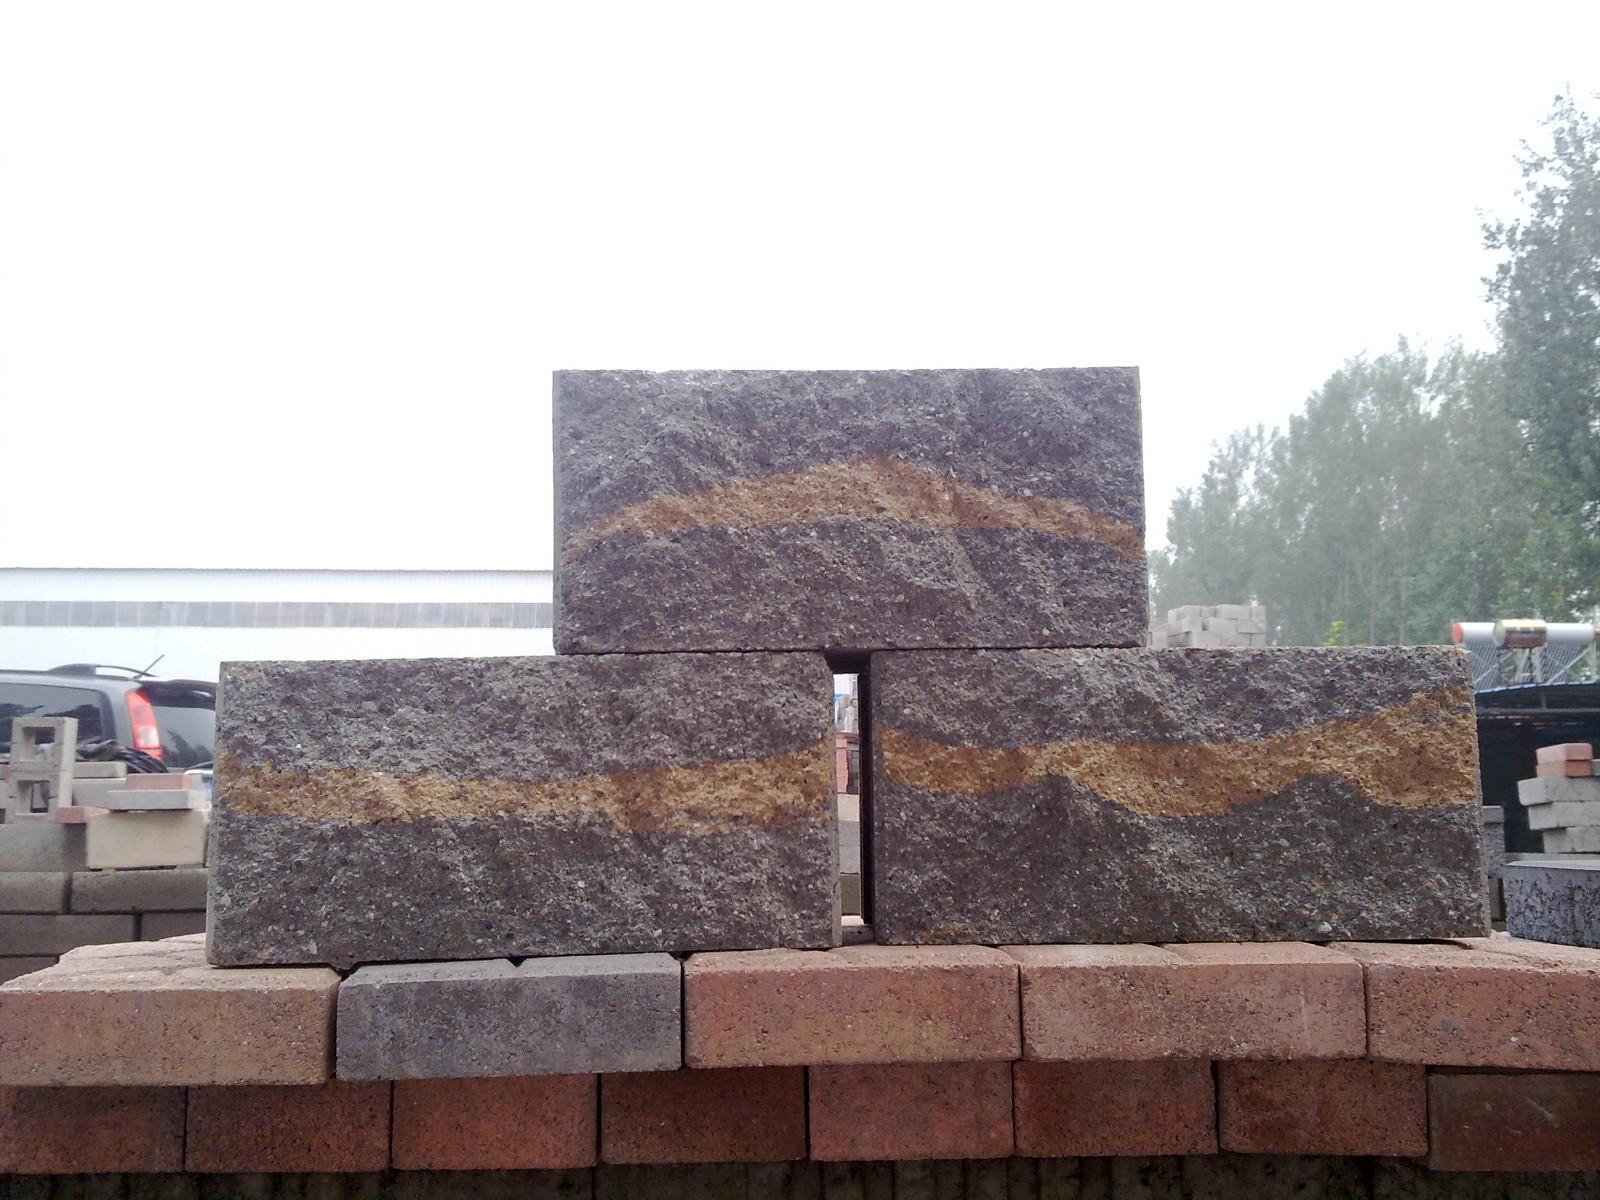 混凝土砌块（承重、轻质、装饰）、地砖、干垒挡土墙砌块